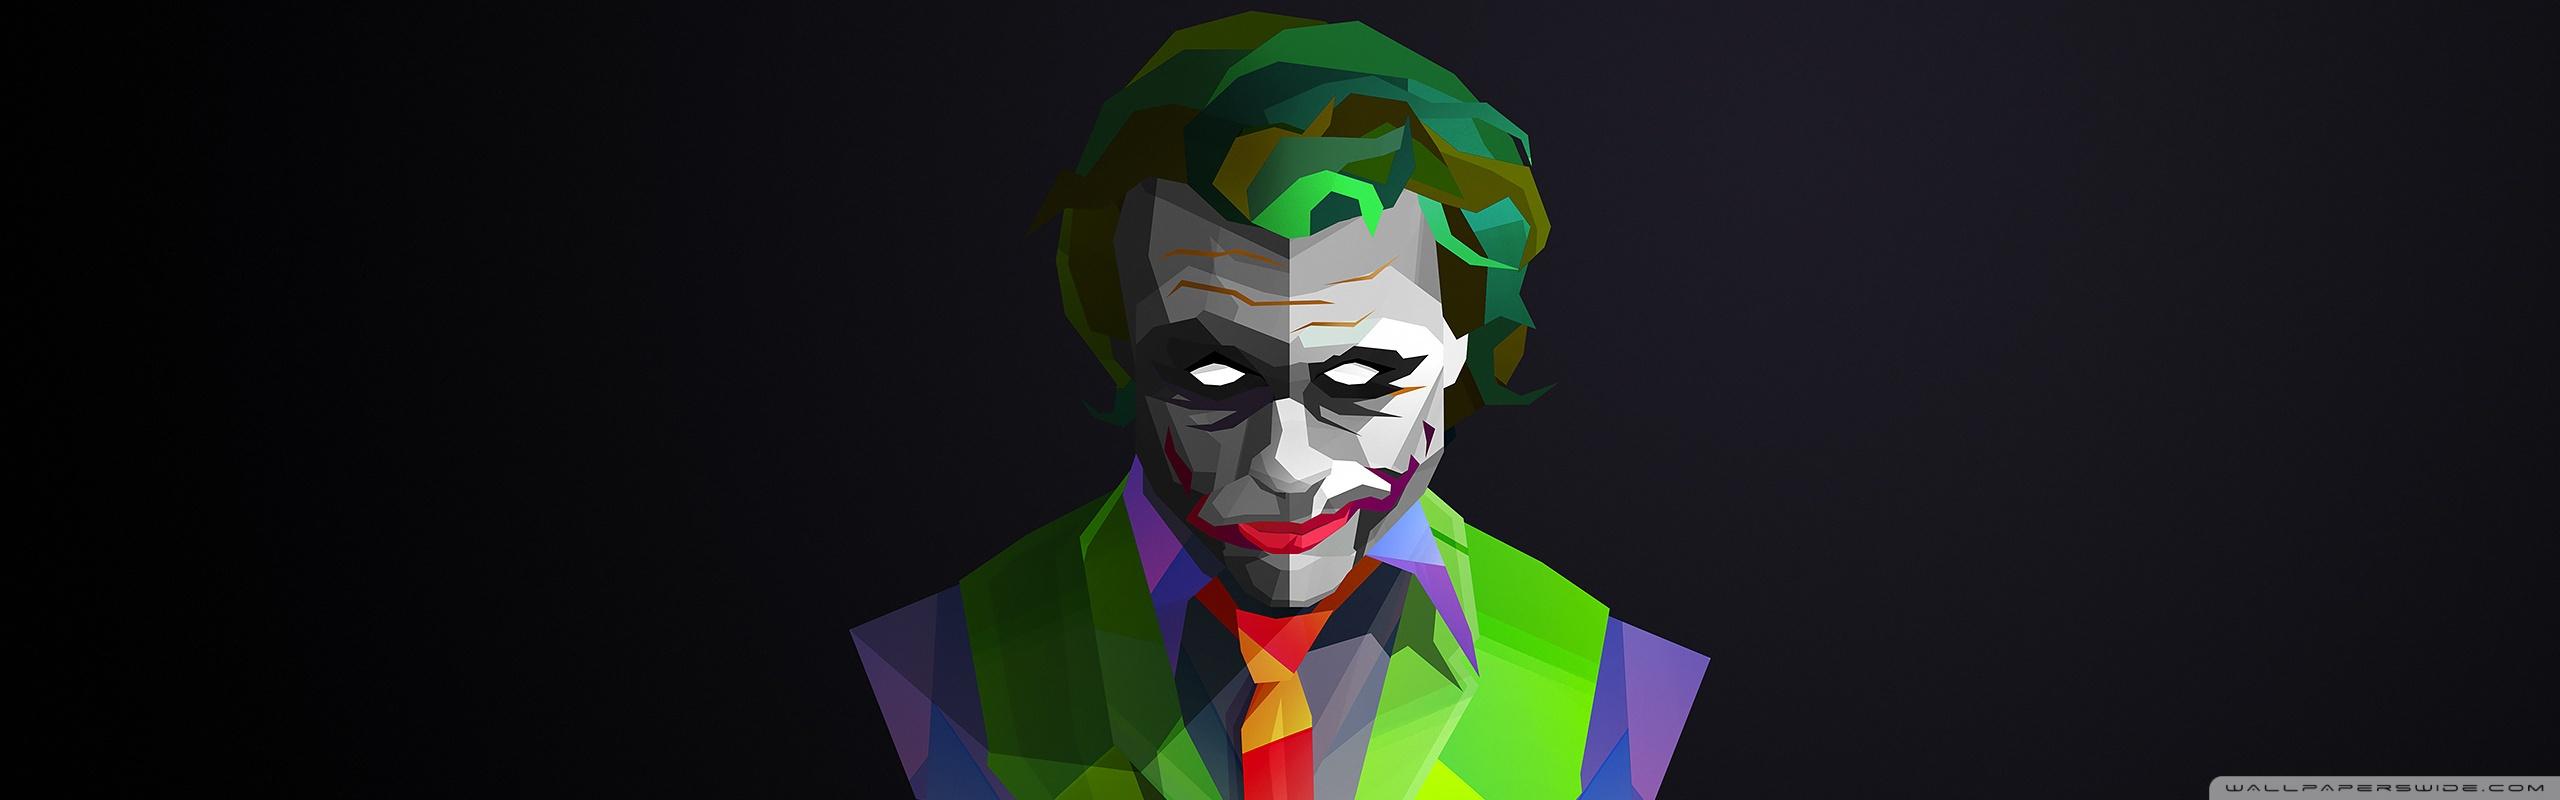 Joker Ultra HD Desktop Background Wallpaper for: Widescreen